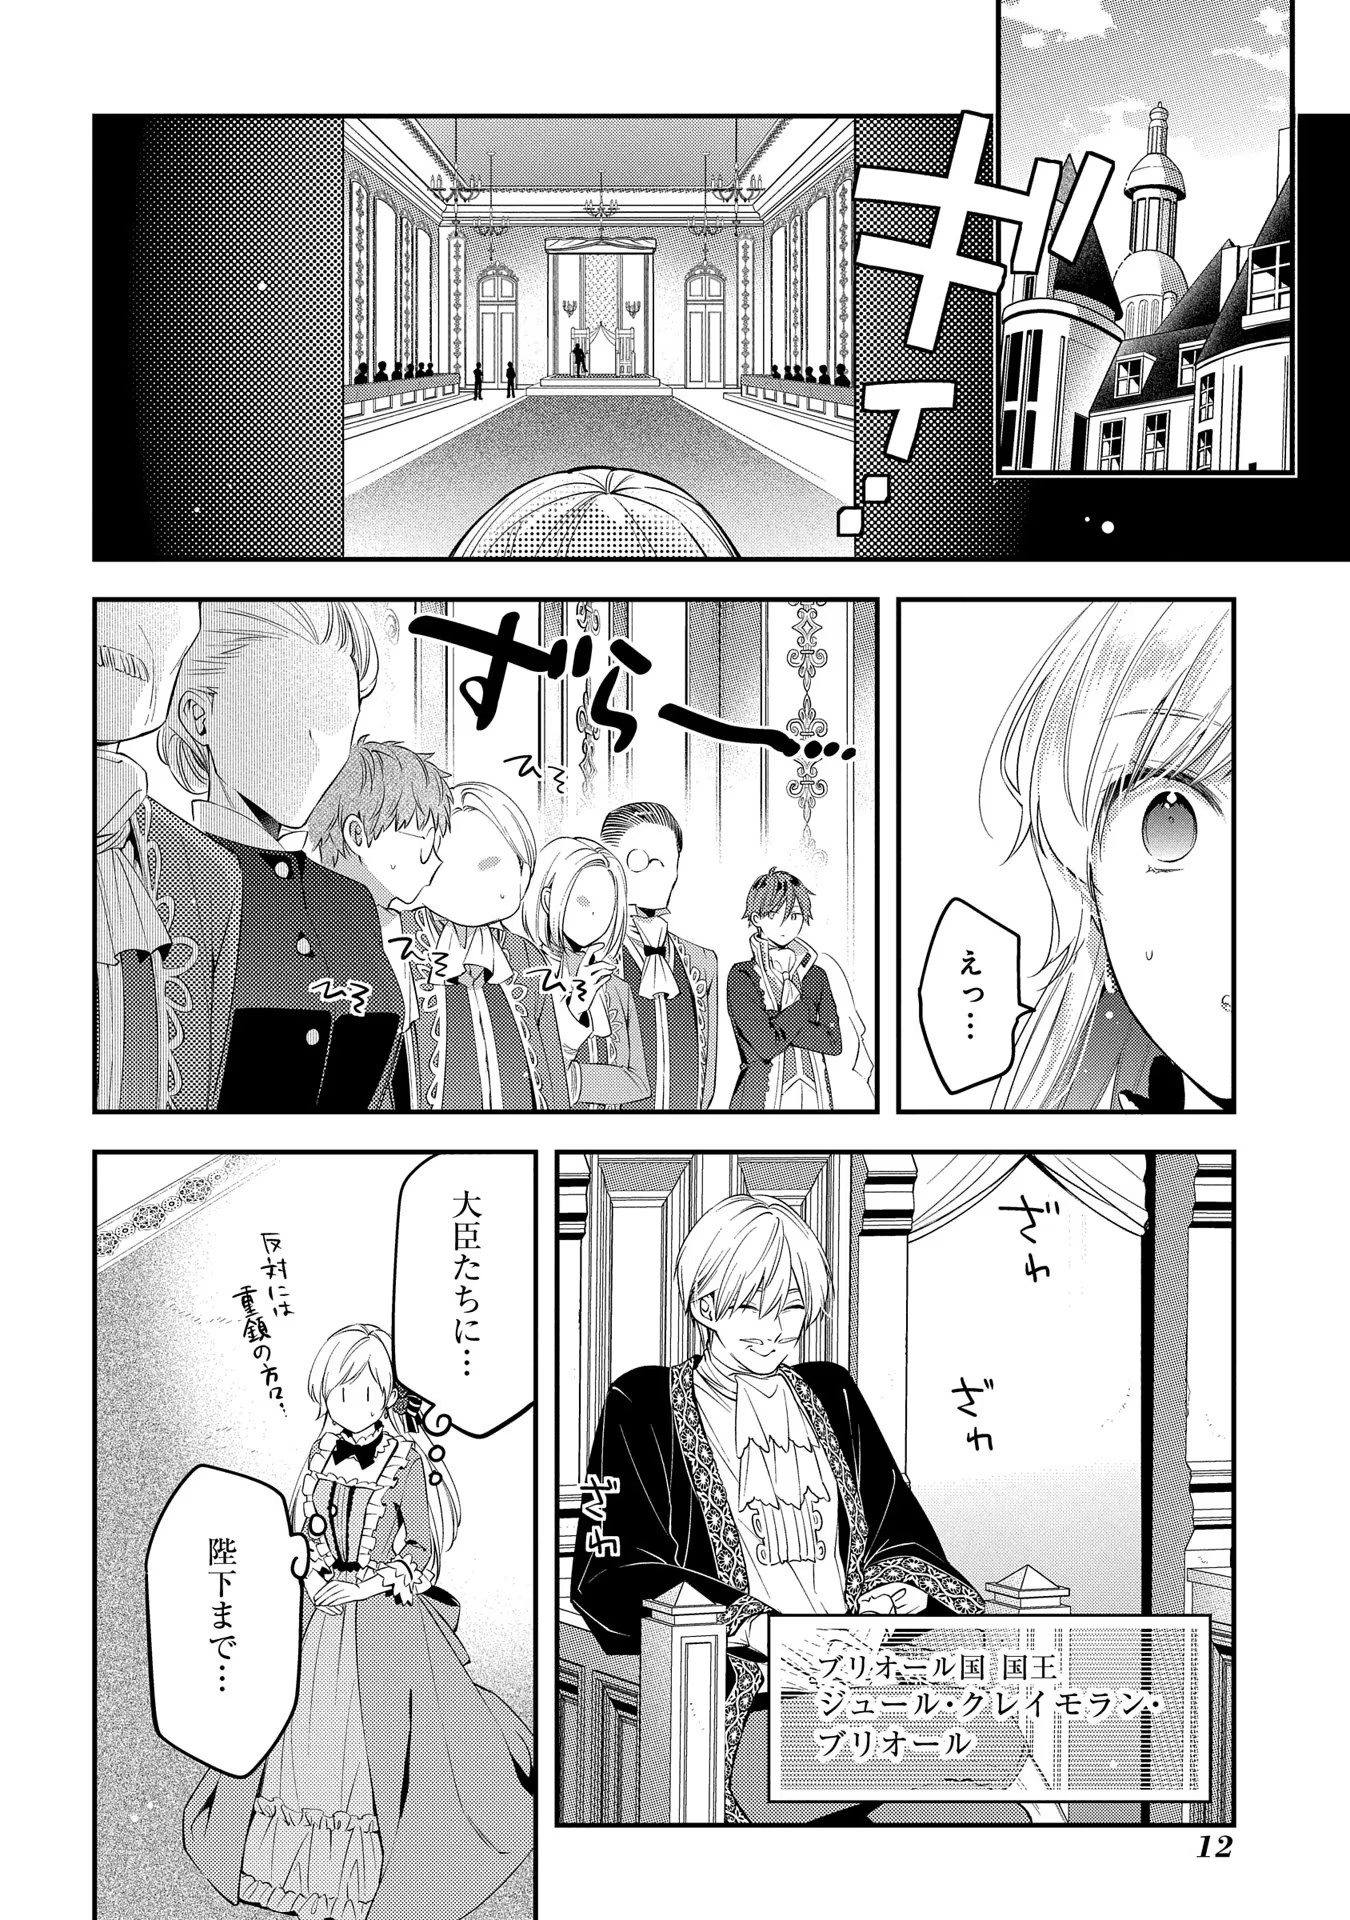 Outaishi ni Konyaku Hakisareta no de, Mou Baka no Furi wa Yameyou to Omoimasu - Chapter 1 - Page 10